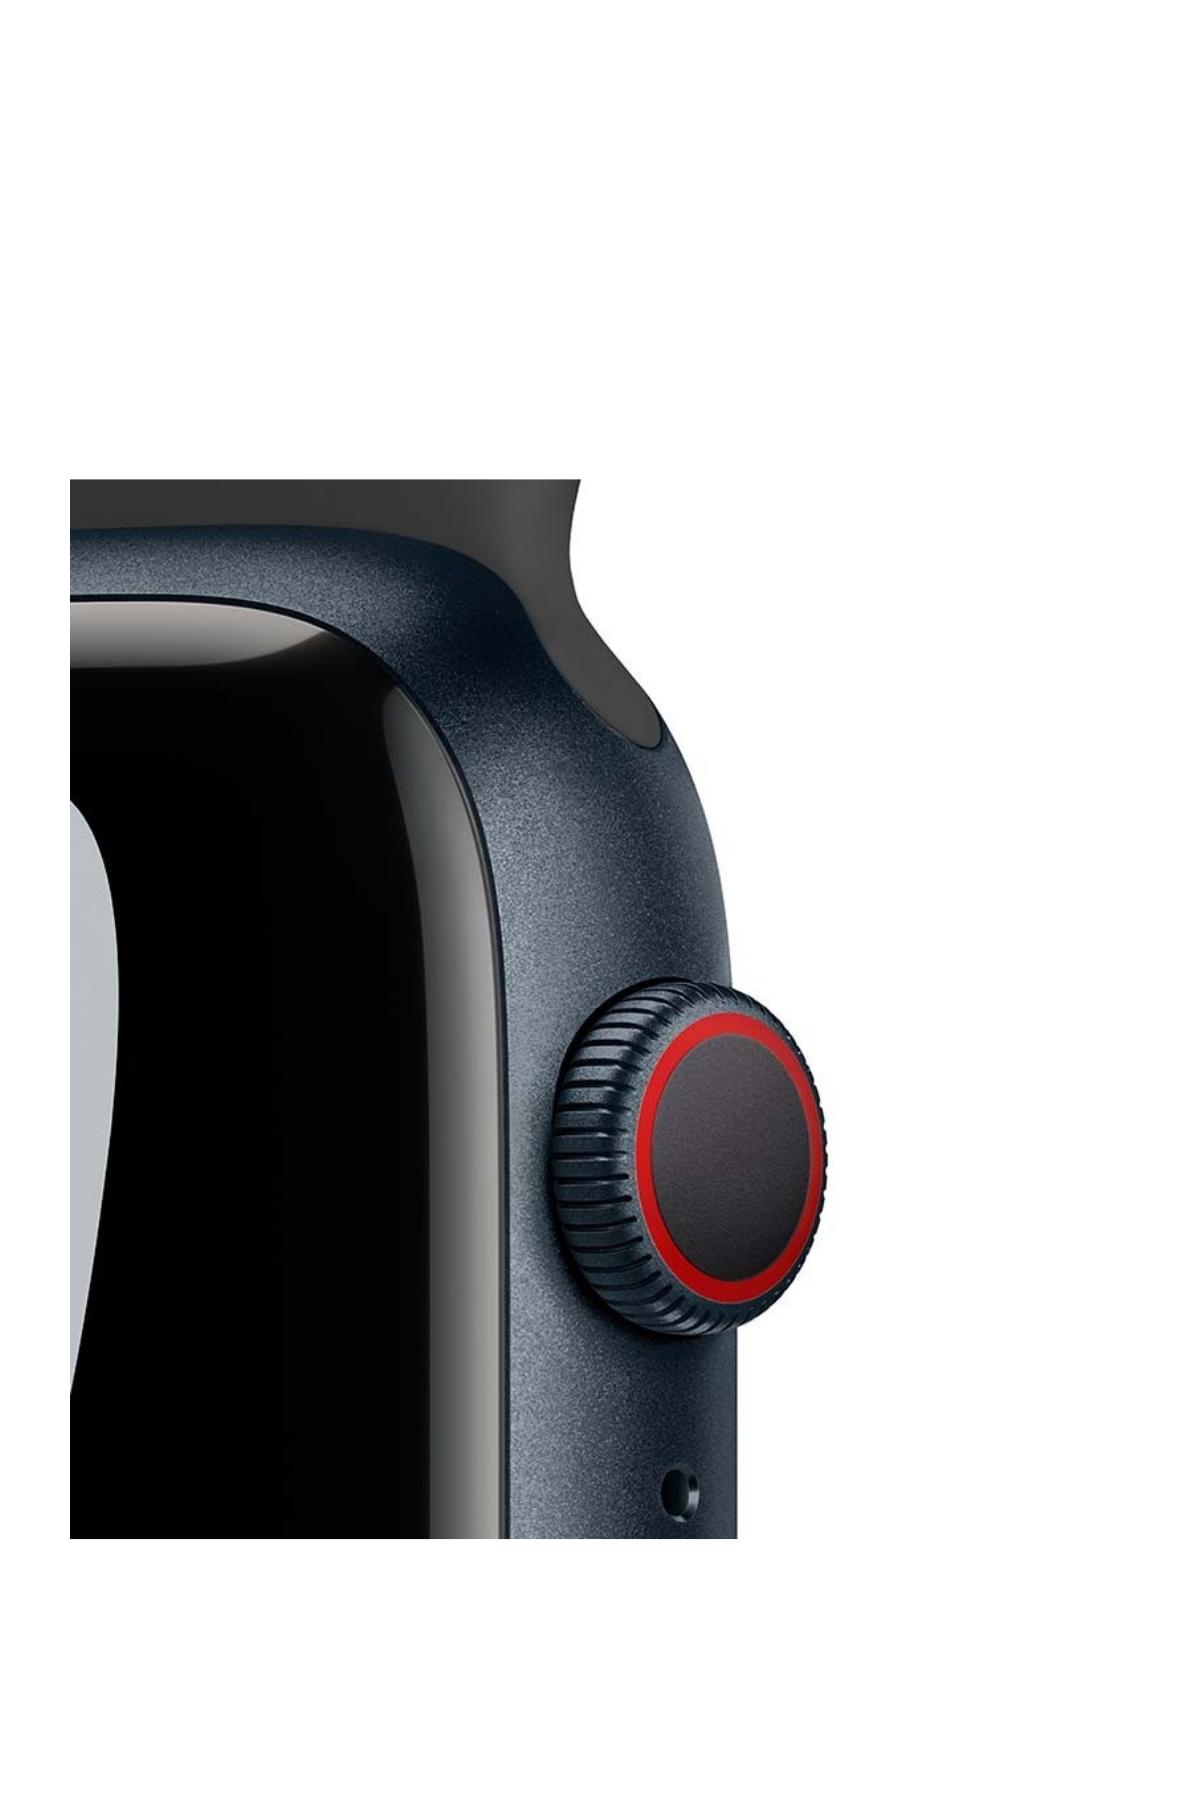 Apple Akıllı Saat Nike S7 (45 MM) 